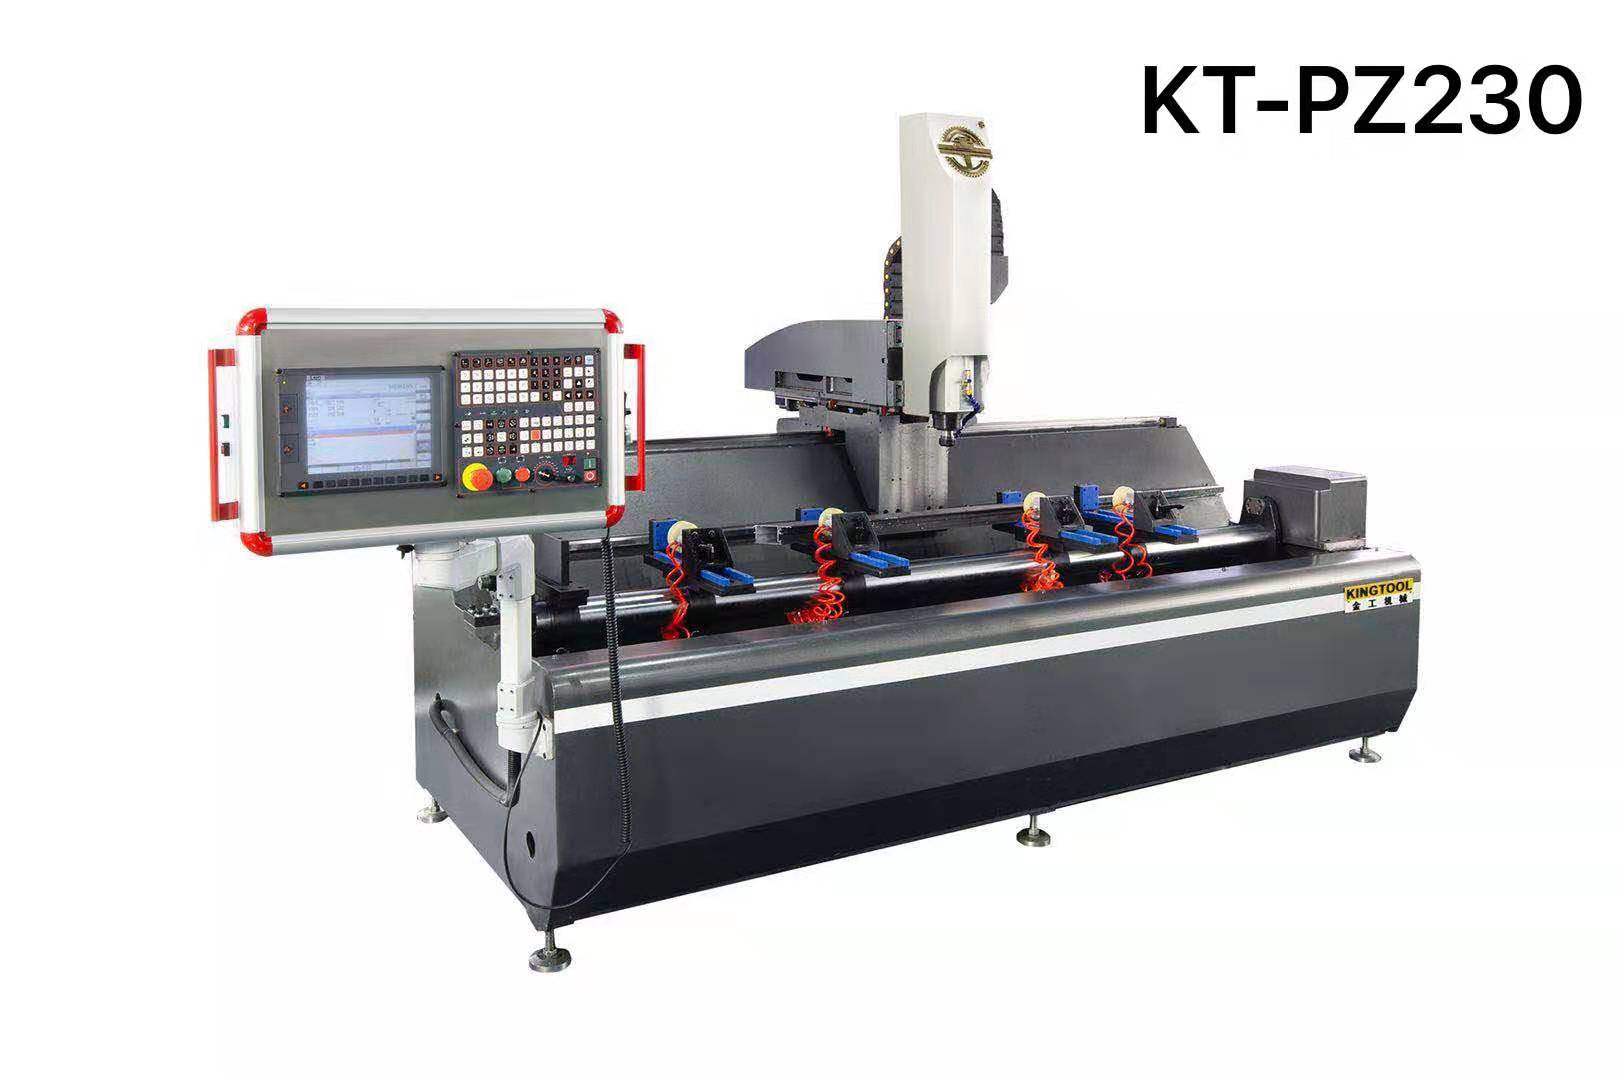 kingtool aluminium machinery Array image261